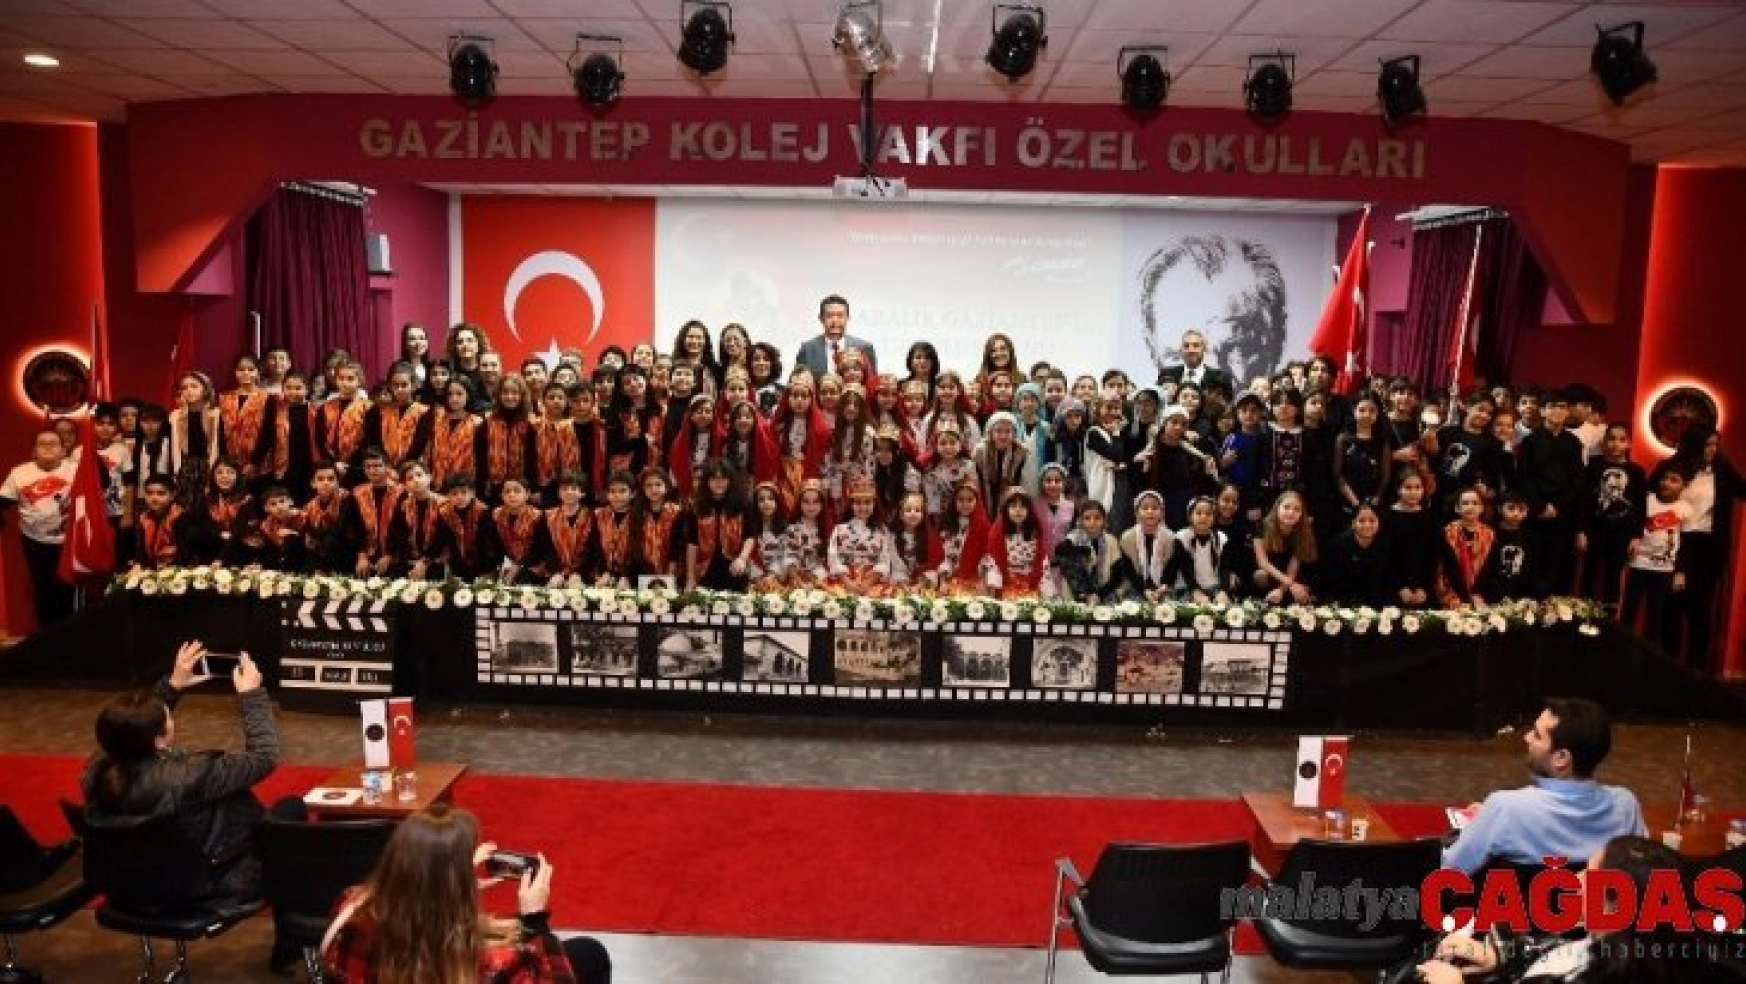 Gaziantep Kolej Vakfı'nda coşkulu kutlama